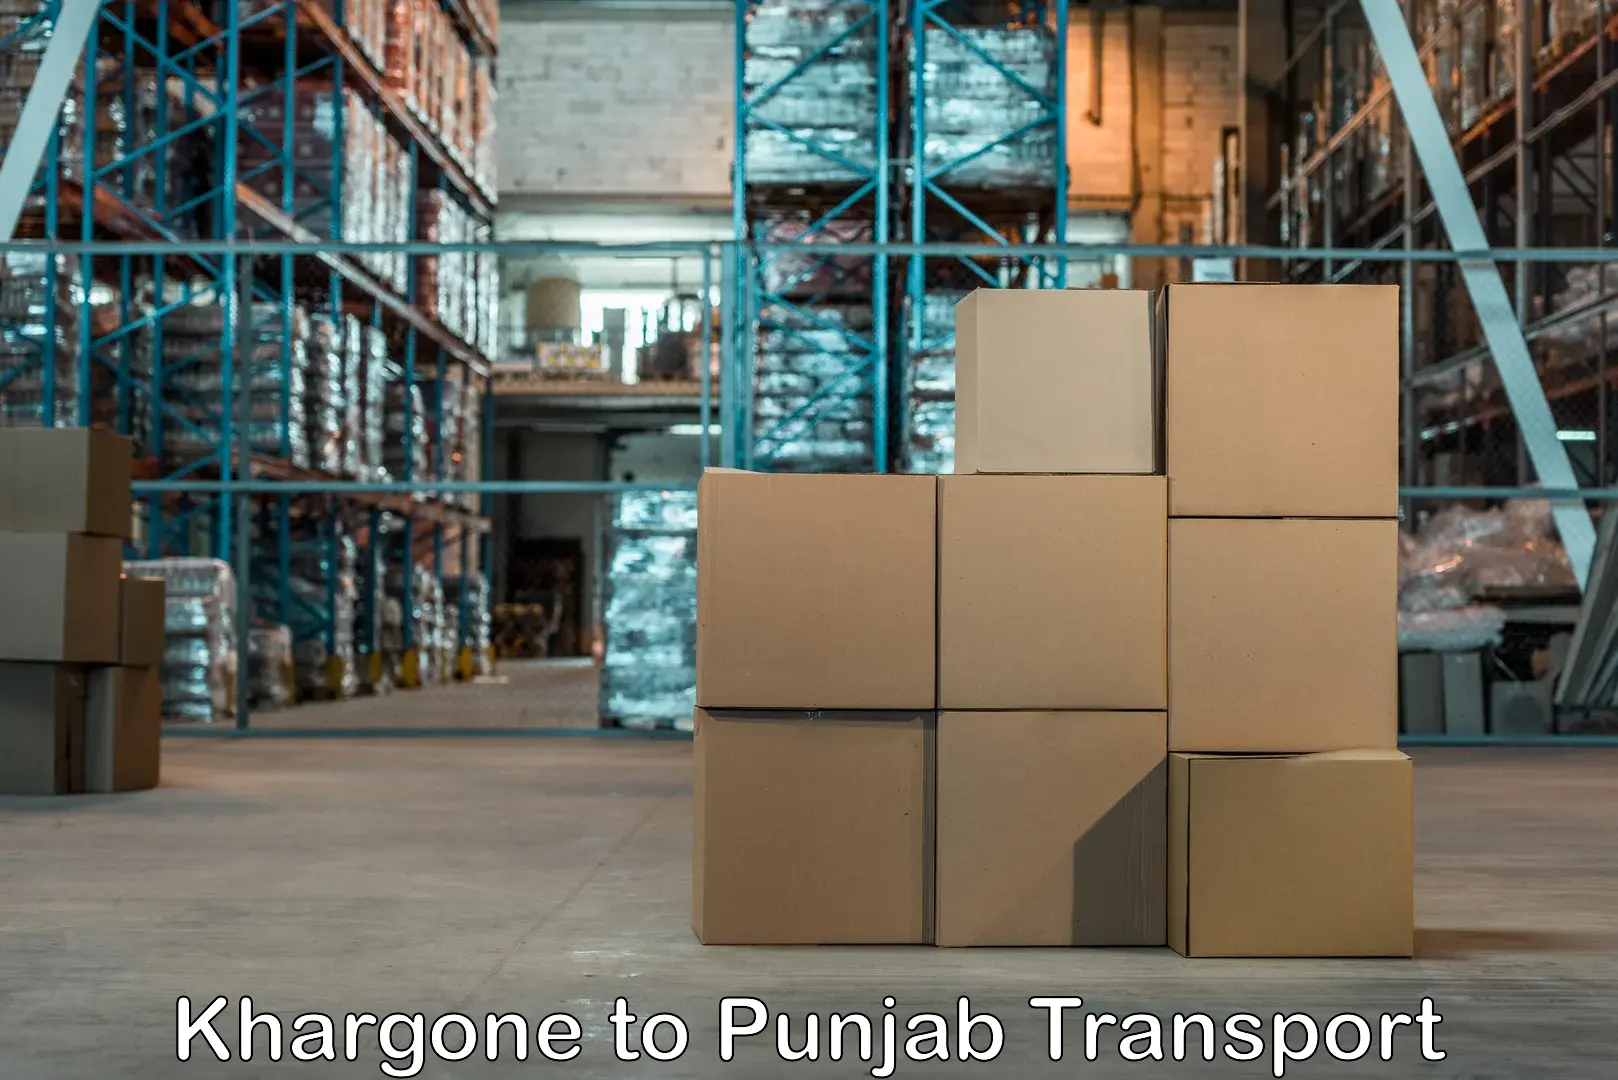 Furniture transport service Khargone to Punjab